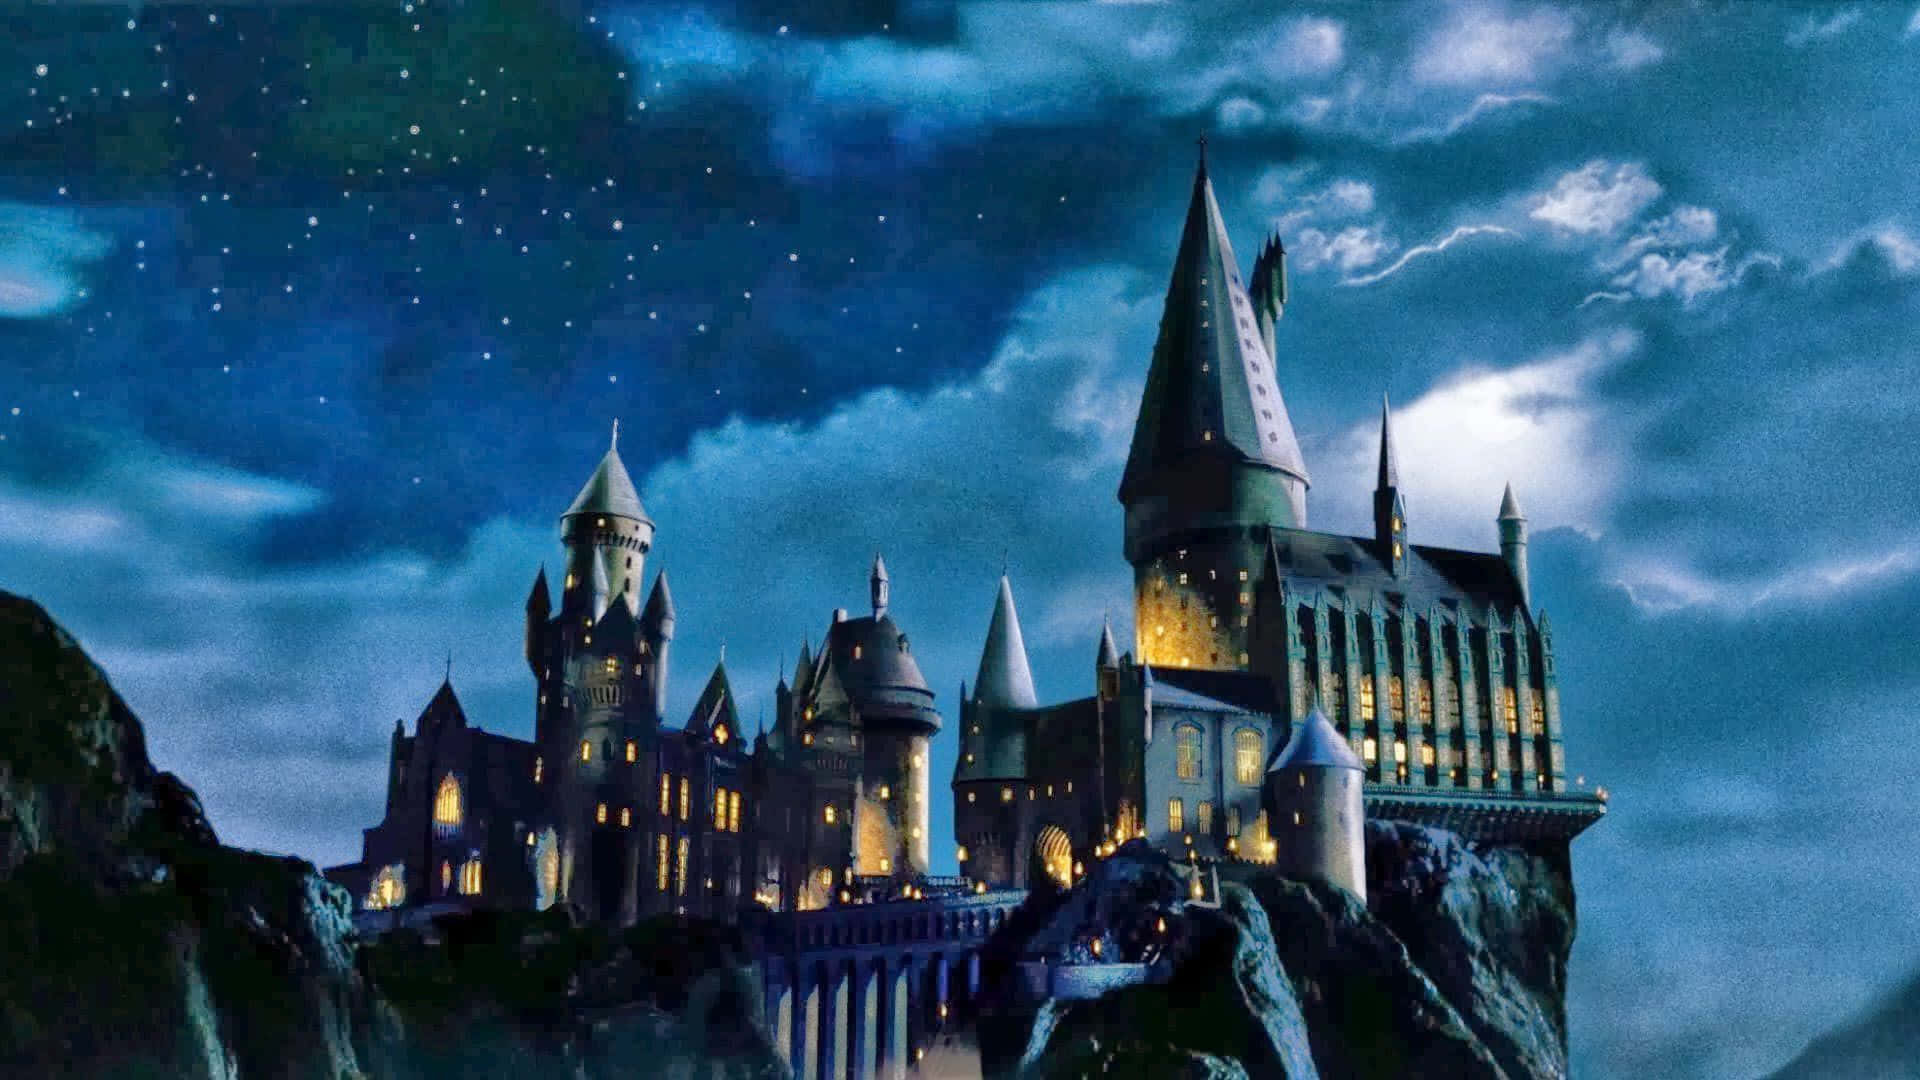 Hogwartsschloss Bei Nacht Mit Sternen Am Himmel Wallpaper